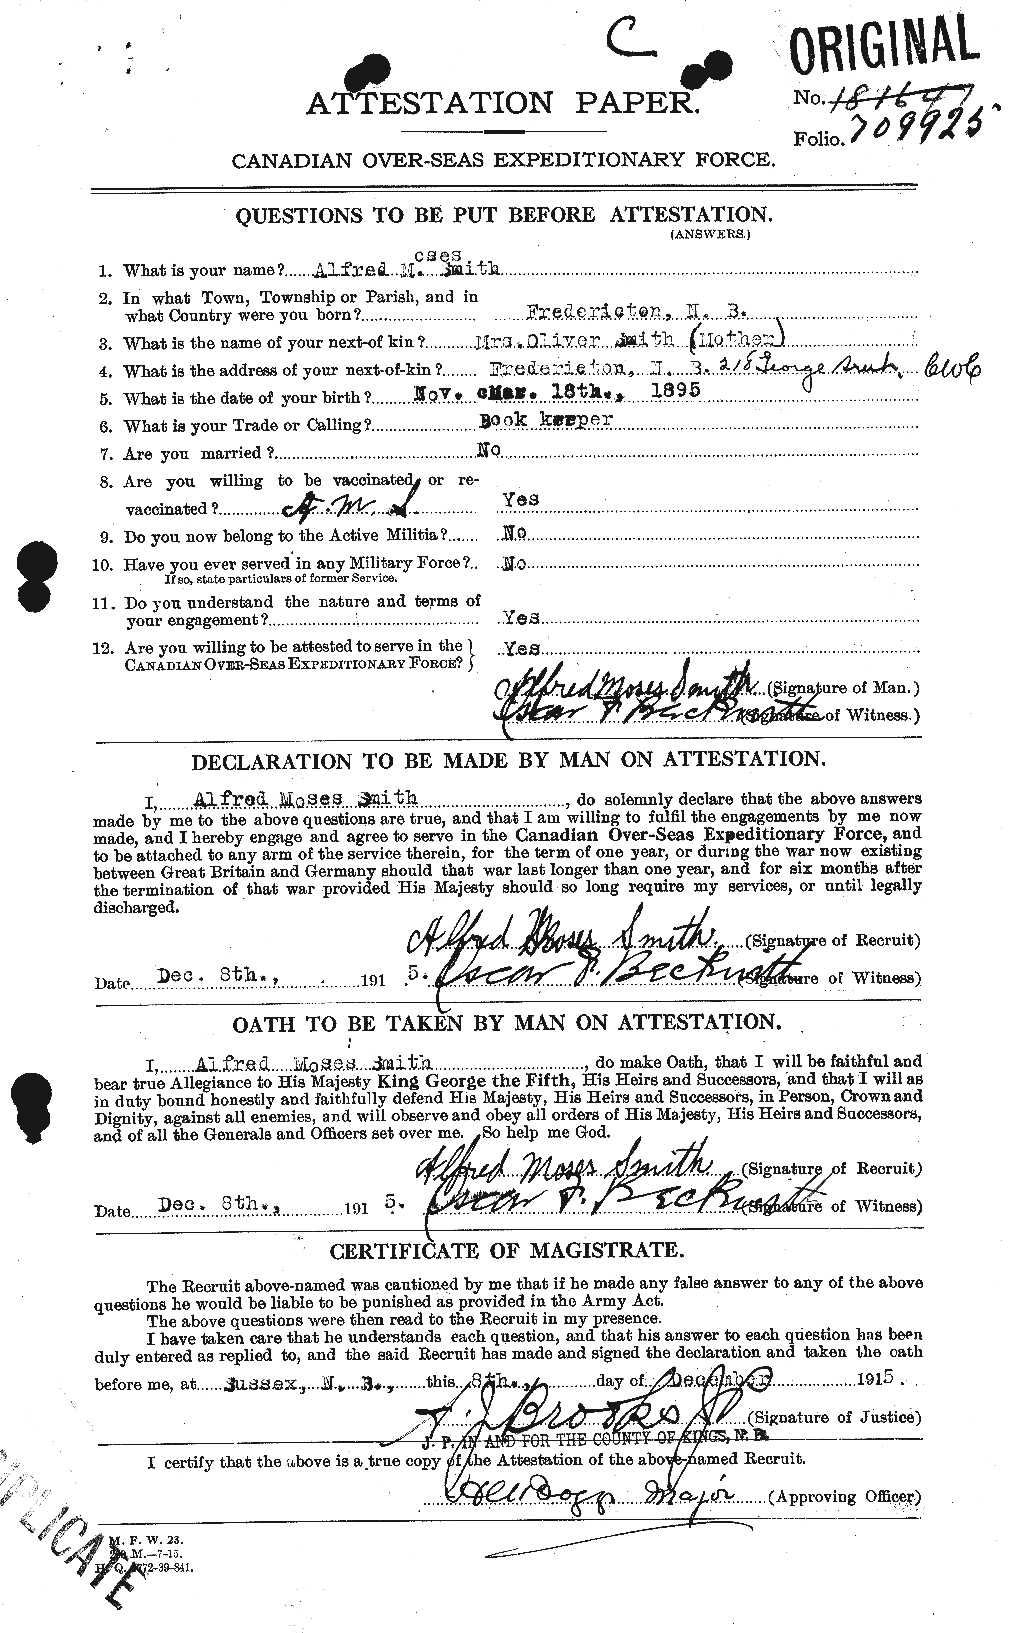 Dossiers du Personnel de la Première Guerre mondiale - CEC 097711a